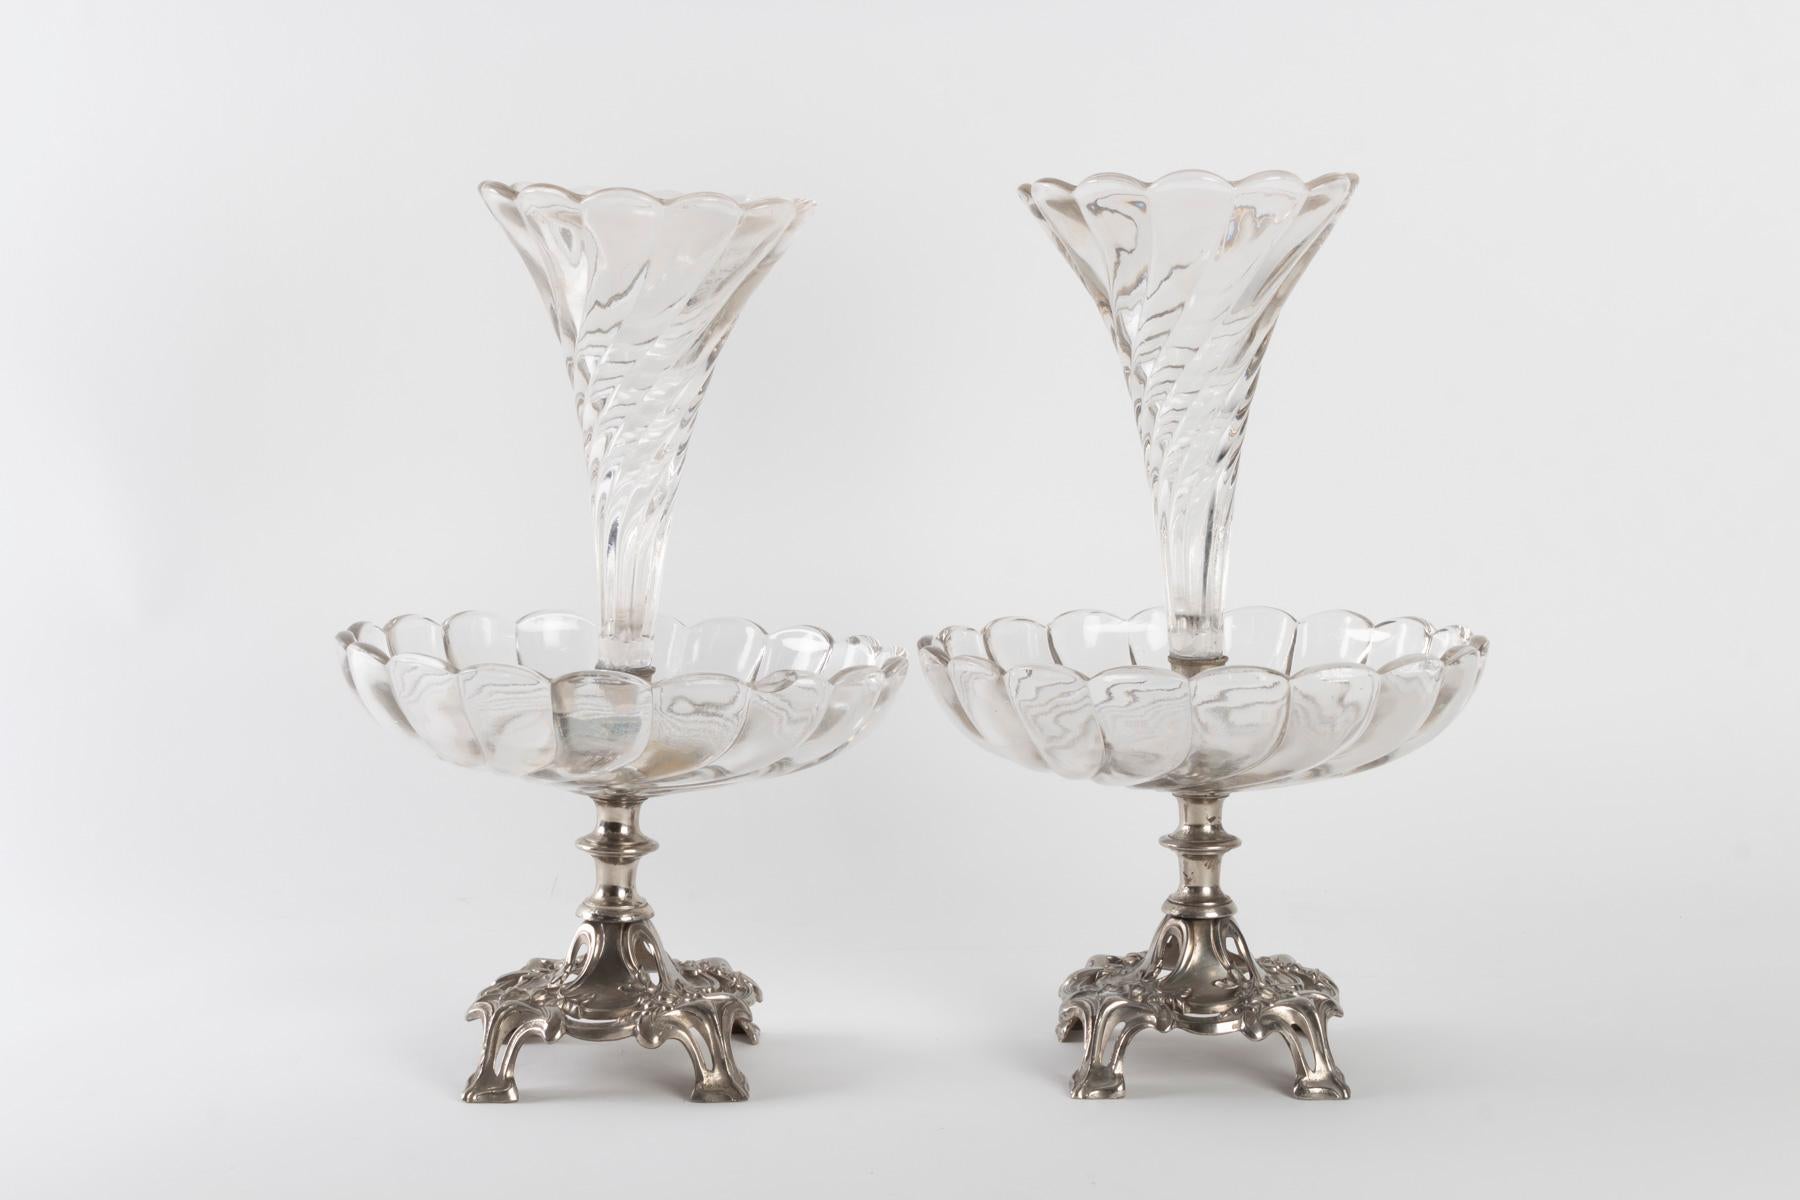 Pair of silvered and crystal metal Bouquetières, Art Nouveau, 1910
Measures: H 35cm, D 22cm.